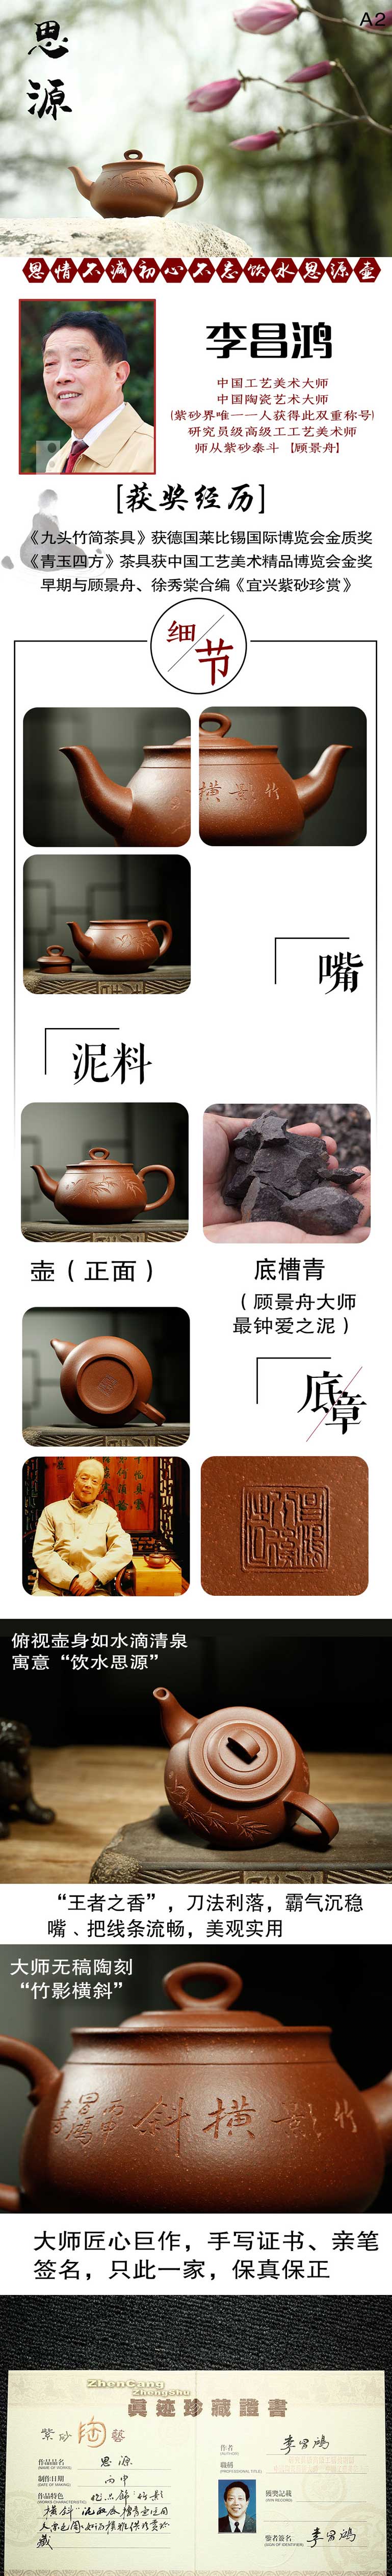 思源壶研究员级高级工艺美术师李昌鸿作品紫砂壶